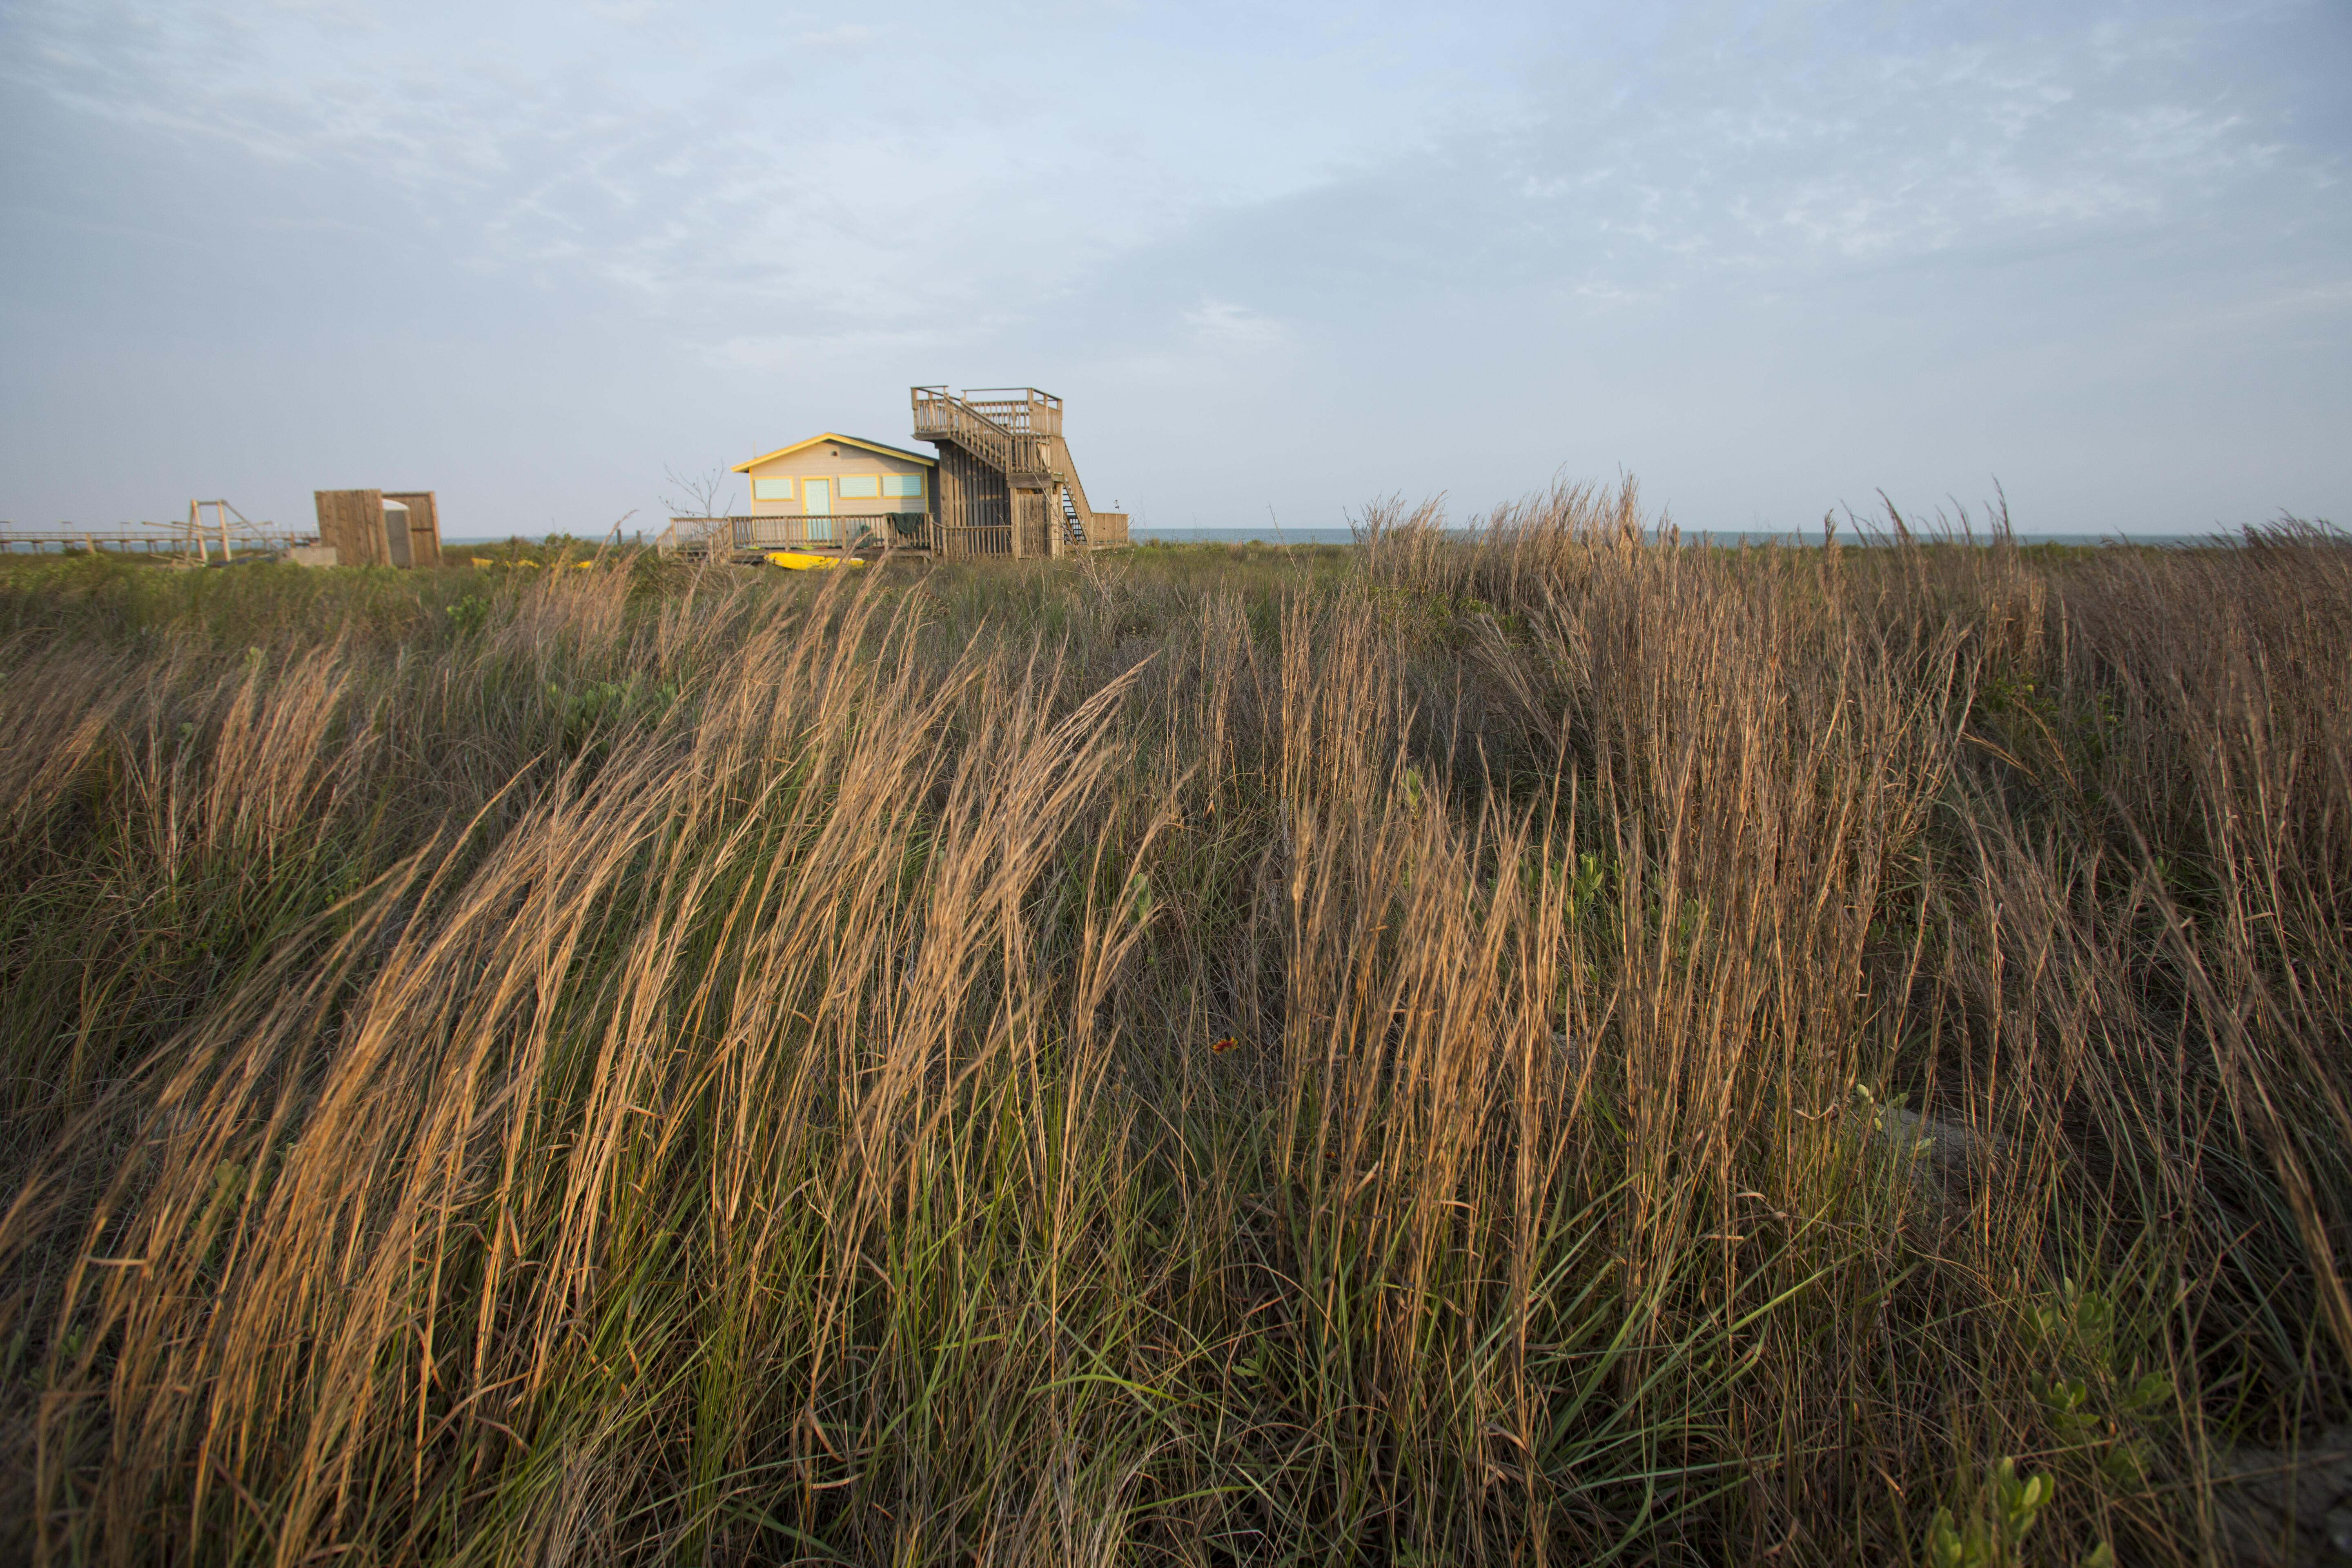 A house sits behind waving tallgrass prairie.